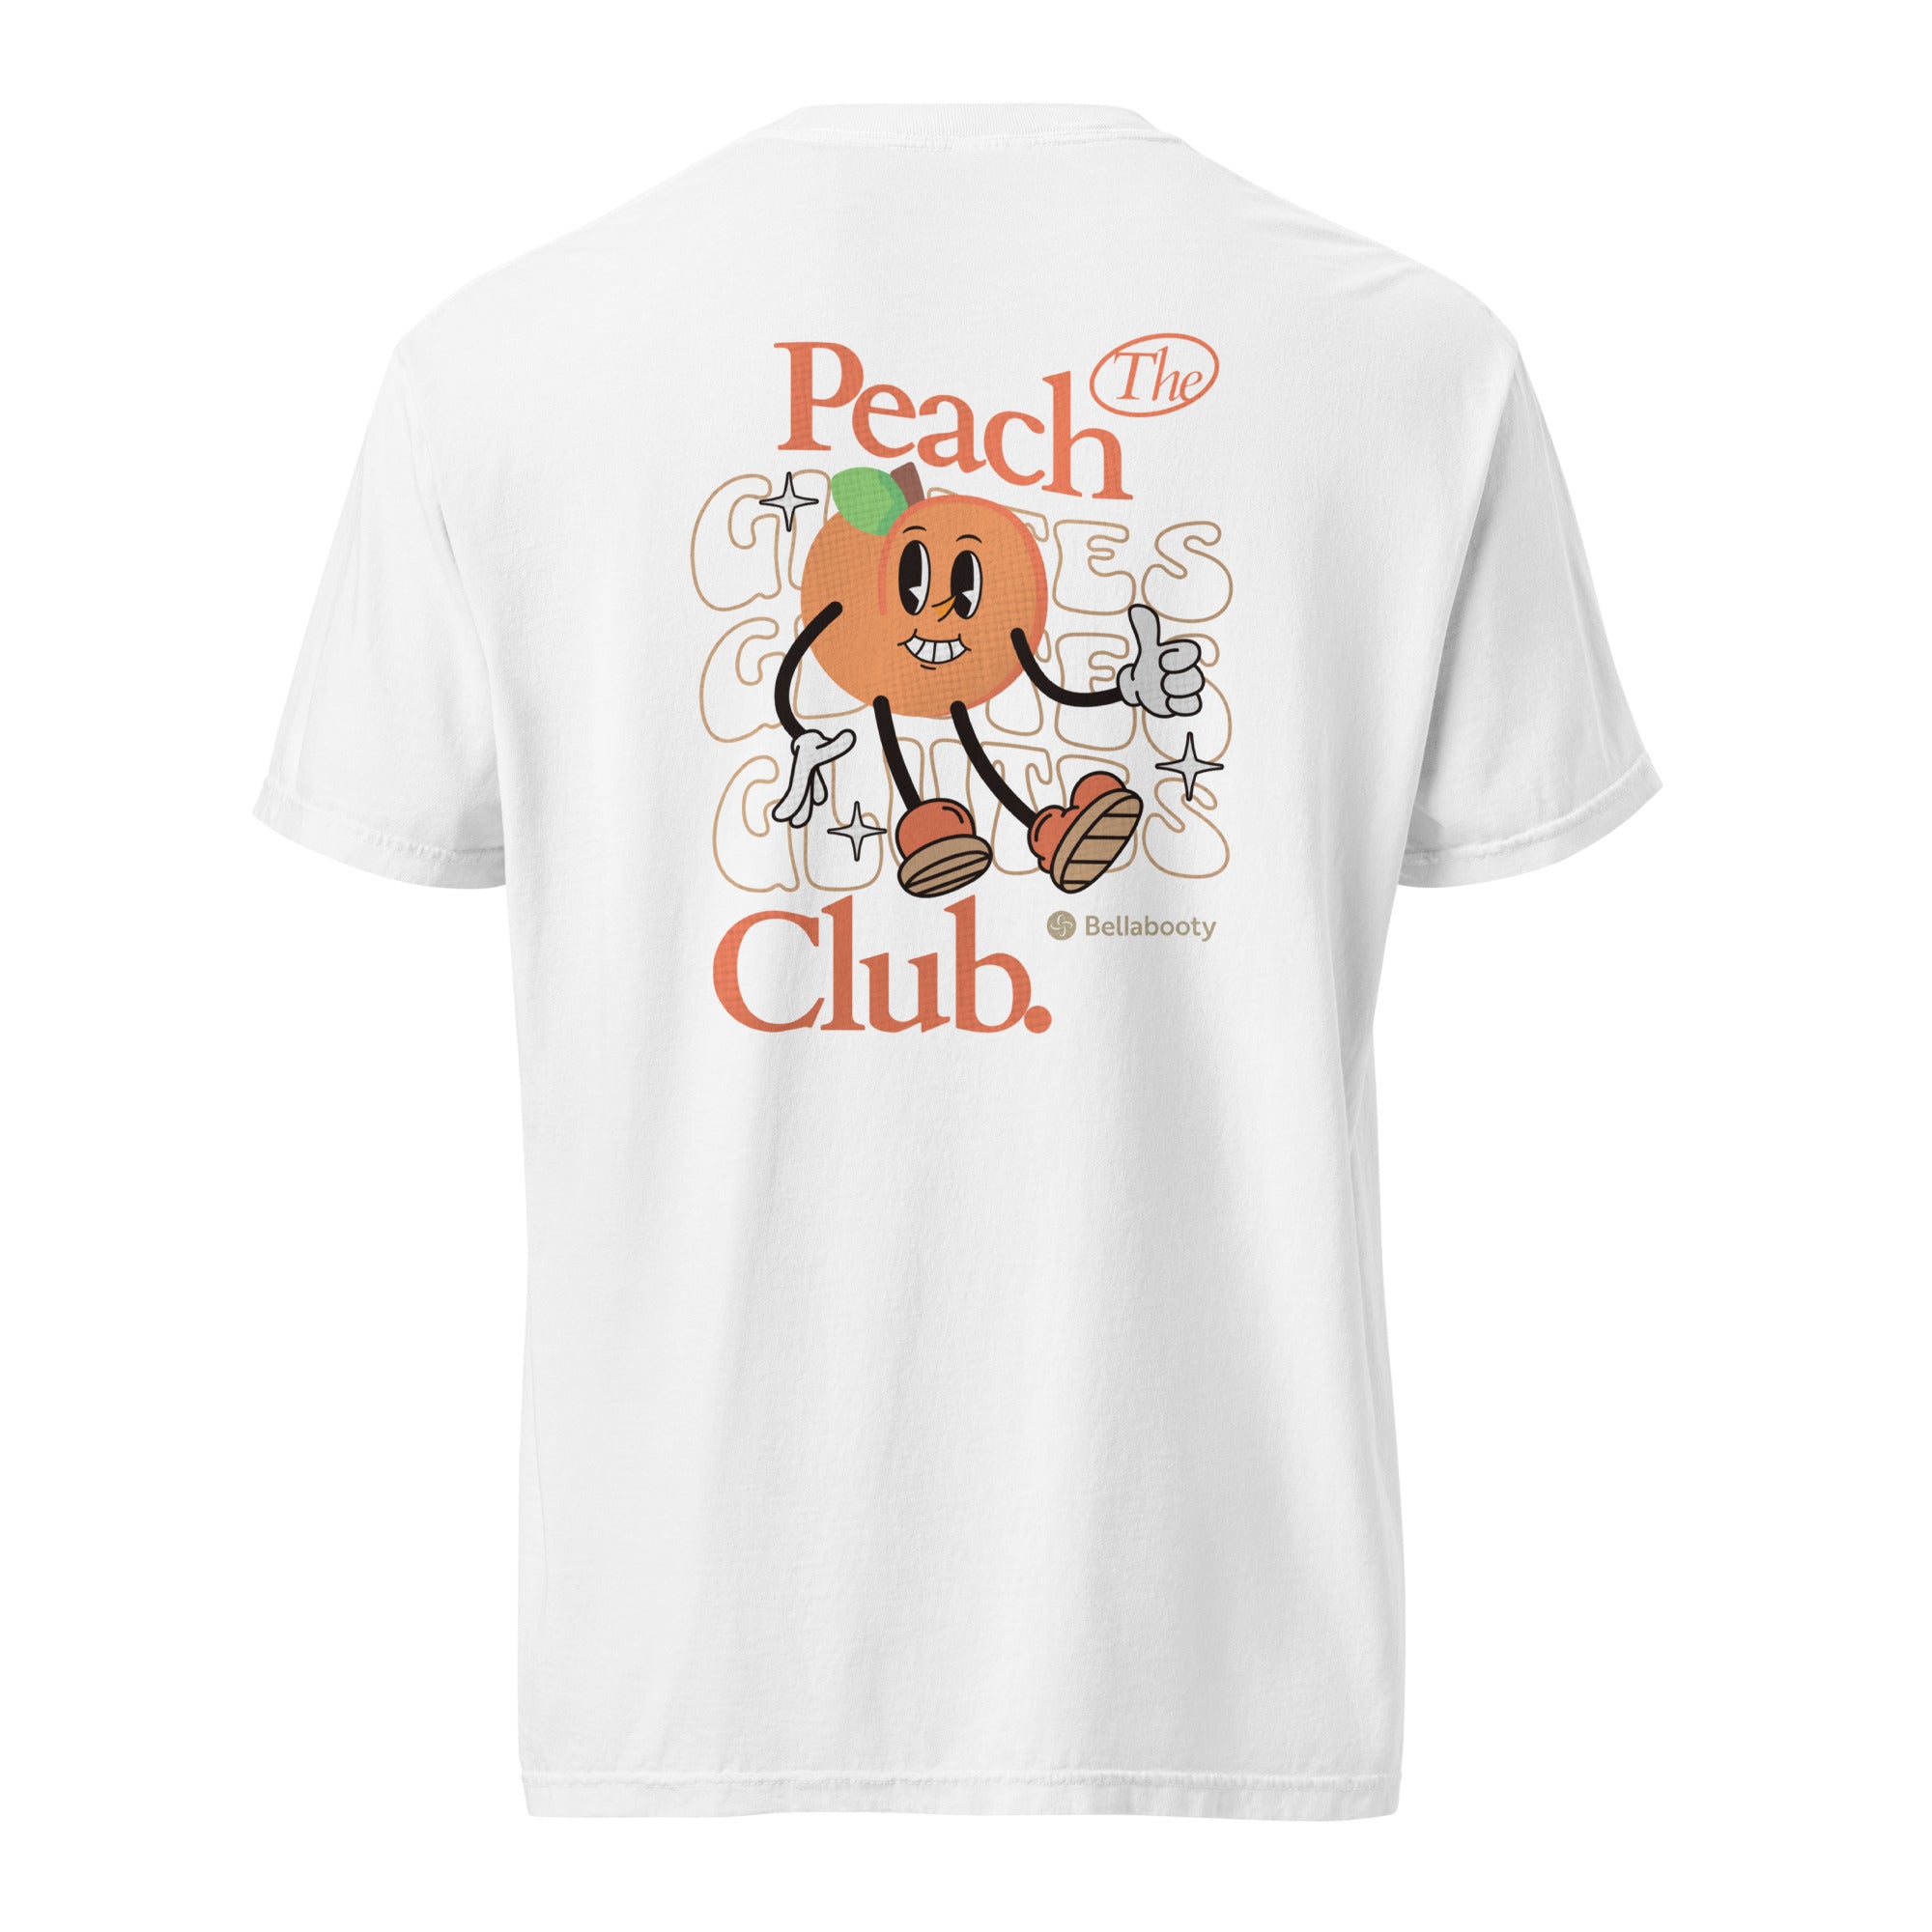 The Peach Club Tee